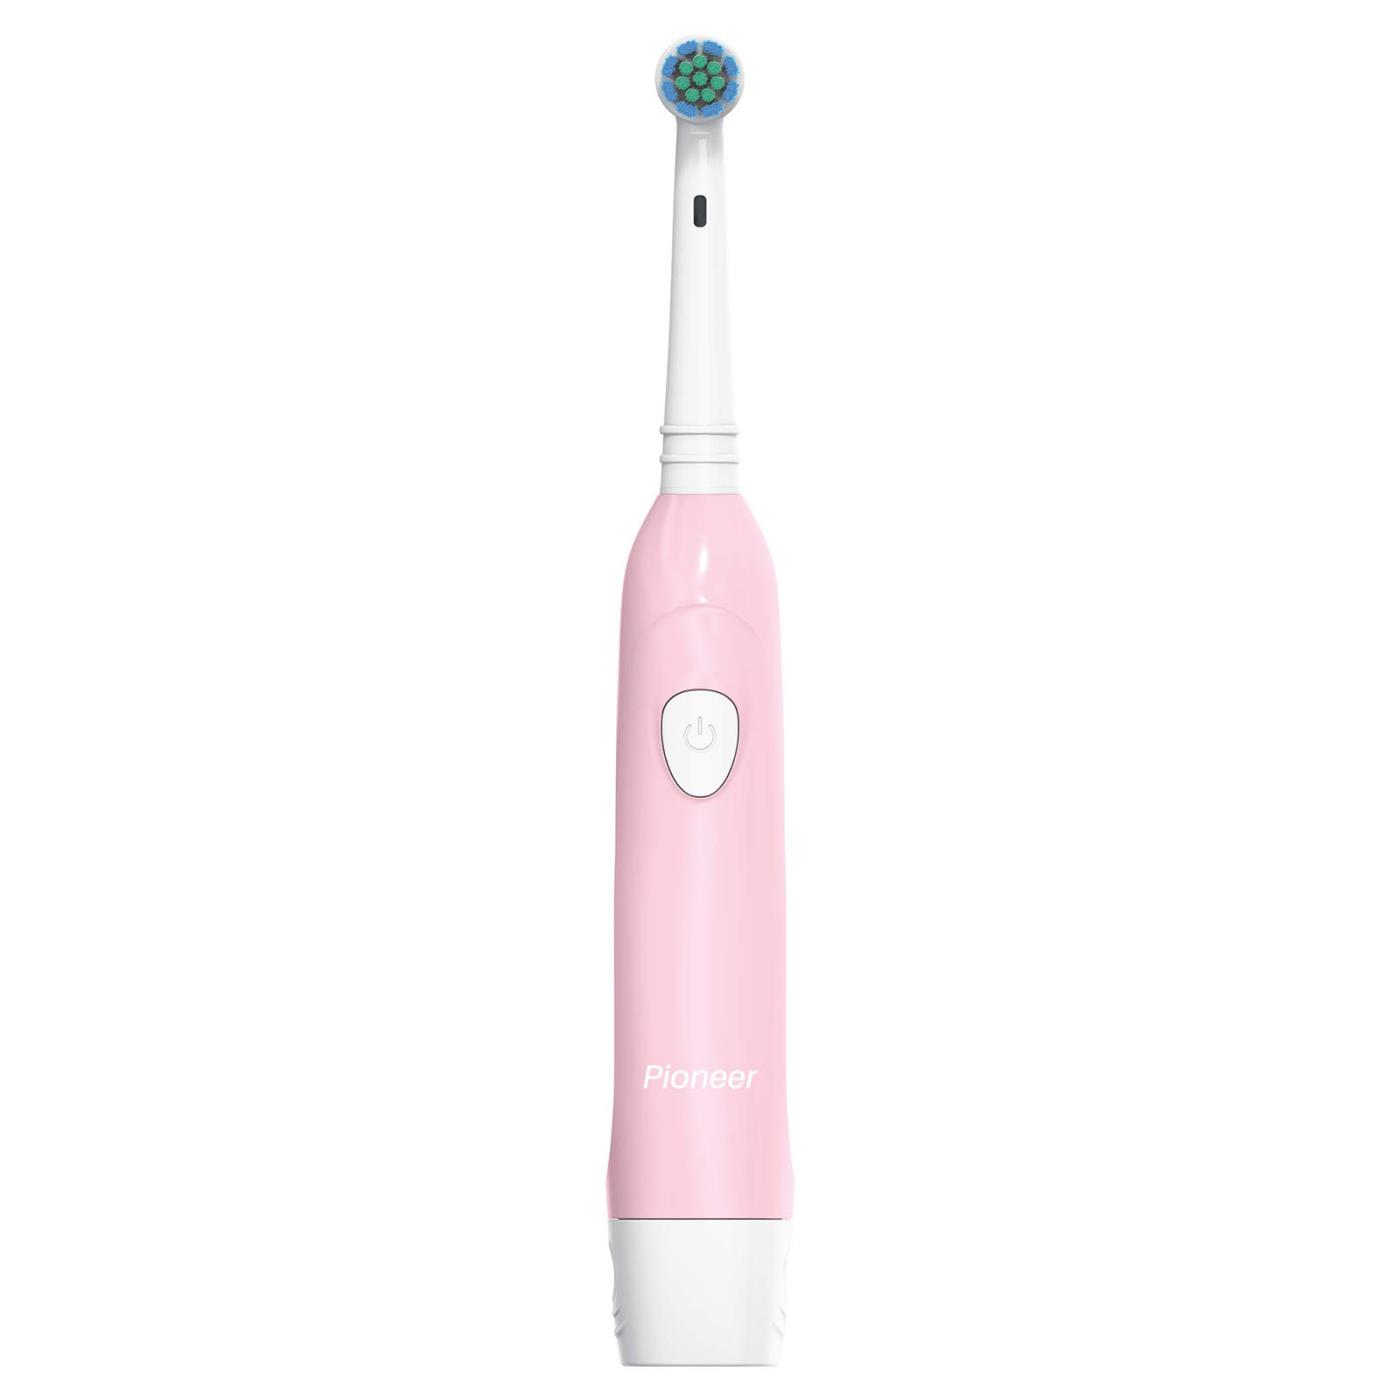 Электрическая зубная щетка Pioneer TB-1021 Розовая